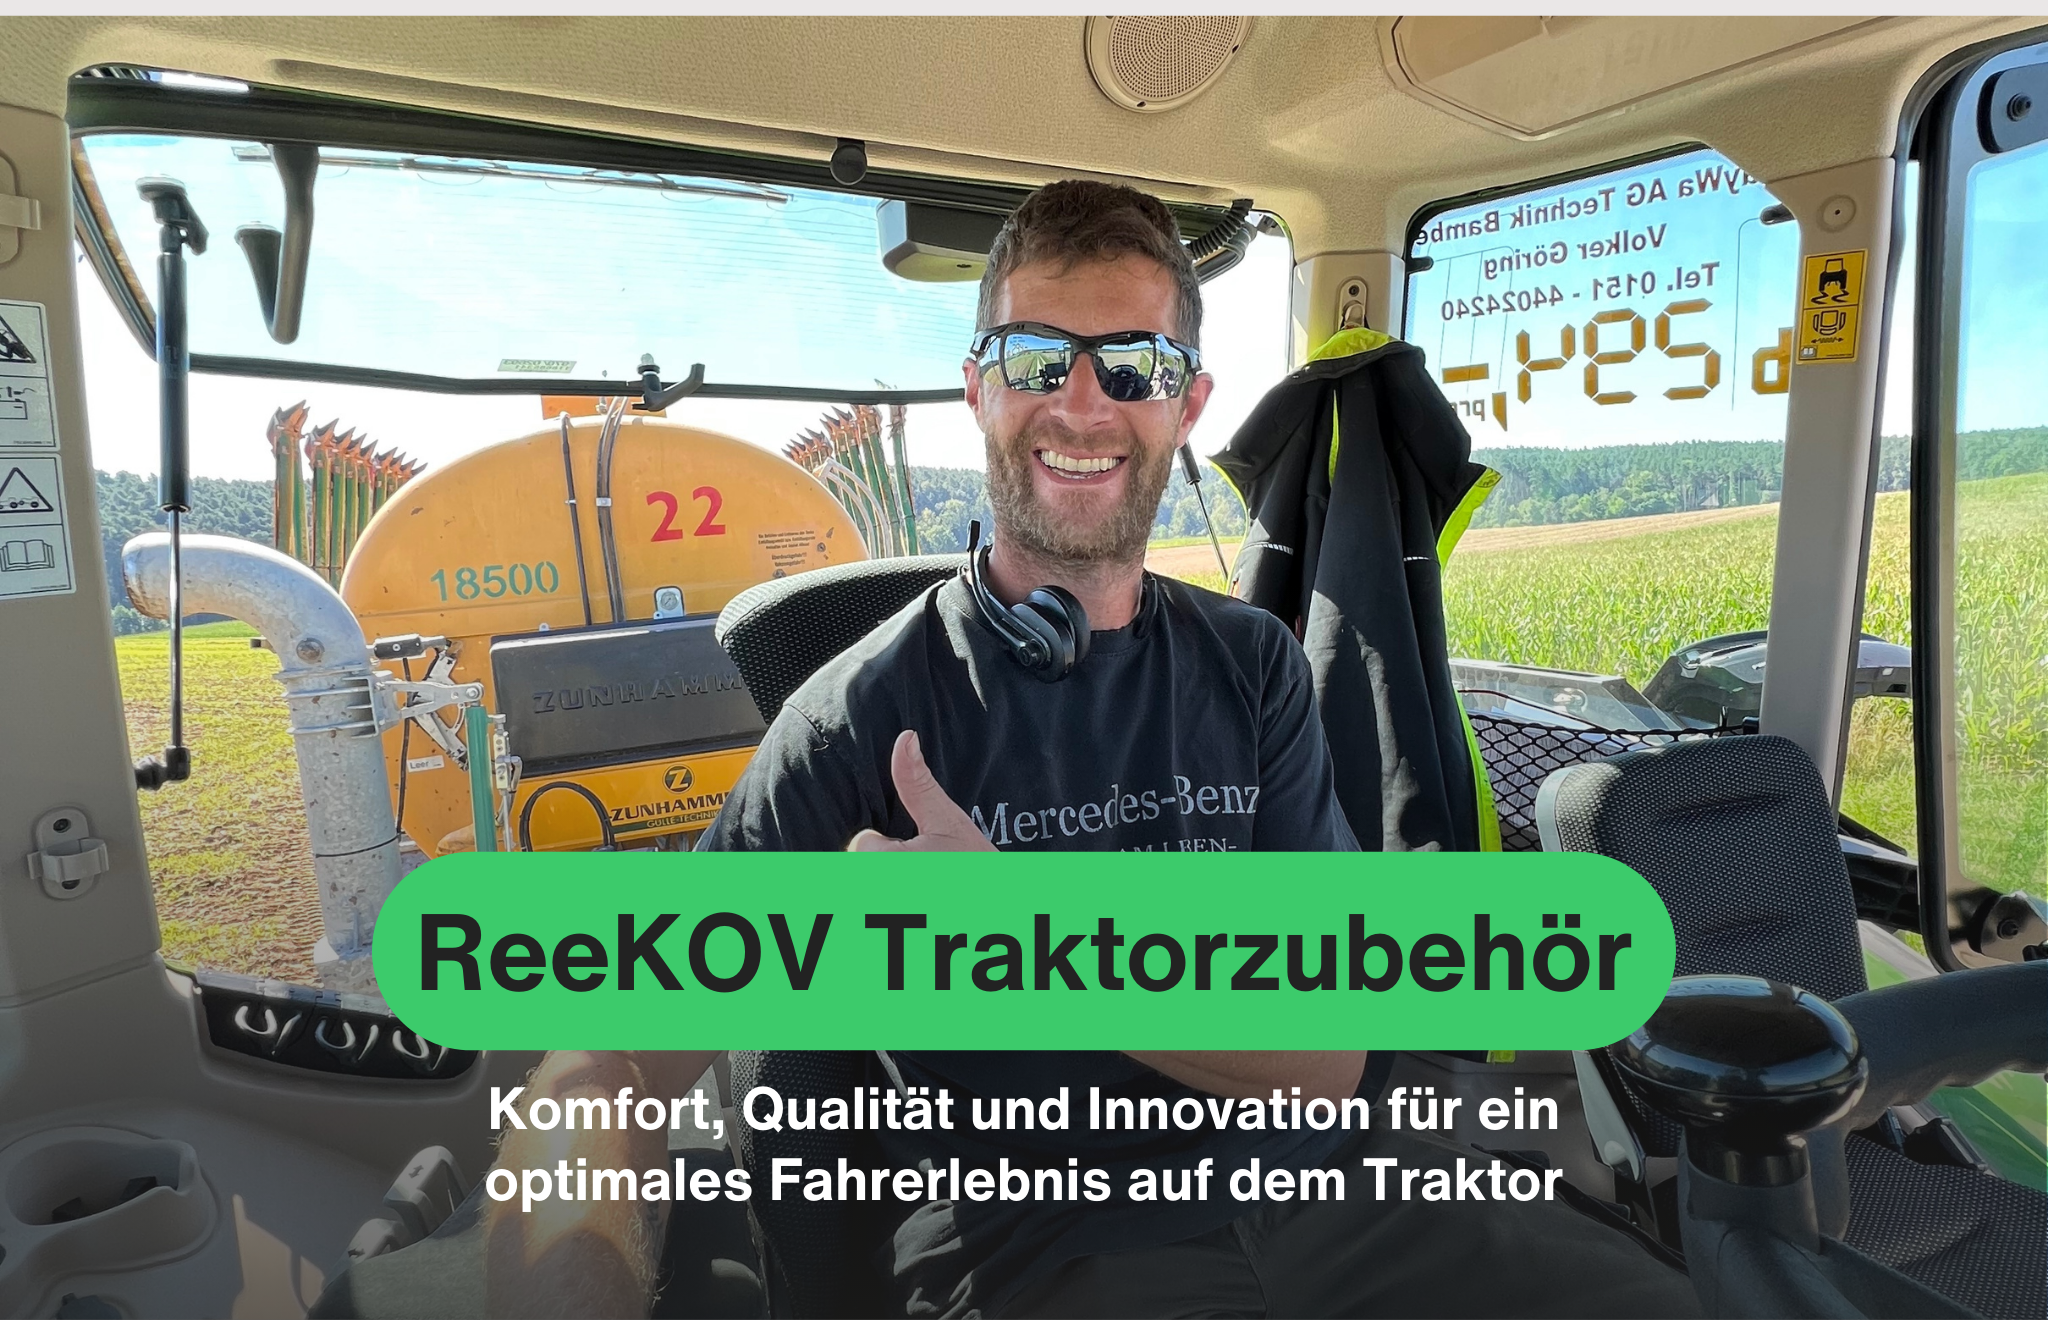 ReeKOV Traktorzubehör - Komfort, Qualität und Innovation für ein optimales Fahrerlebnis auf dem Traktor.